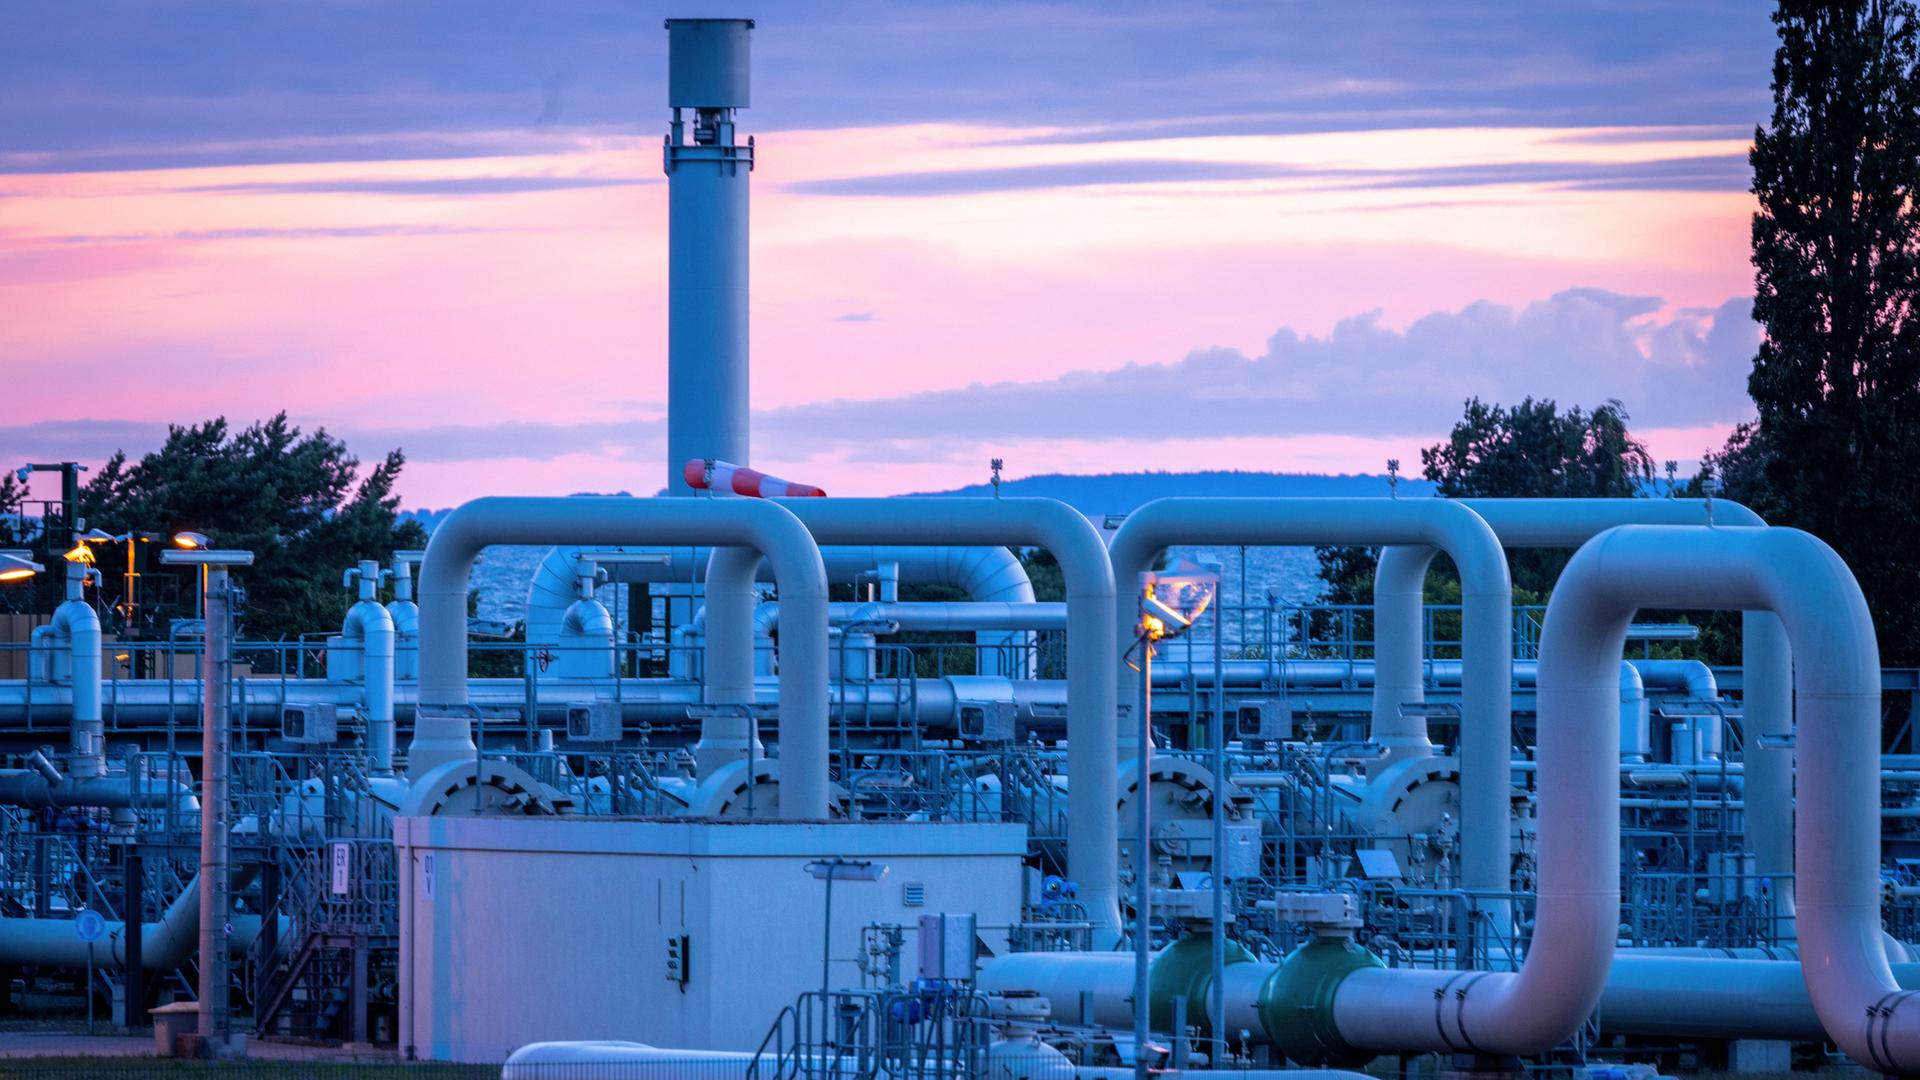 Rohrsysteme und Absperrvorrichtungen in der Gasempfangsstation der Ostseepipeline Nord Stream 1 und der Übernahmestation der Ferngasleitung OPAL vor Sonnenaufgang.